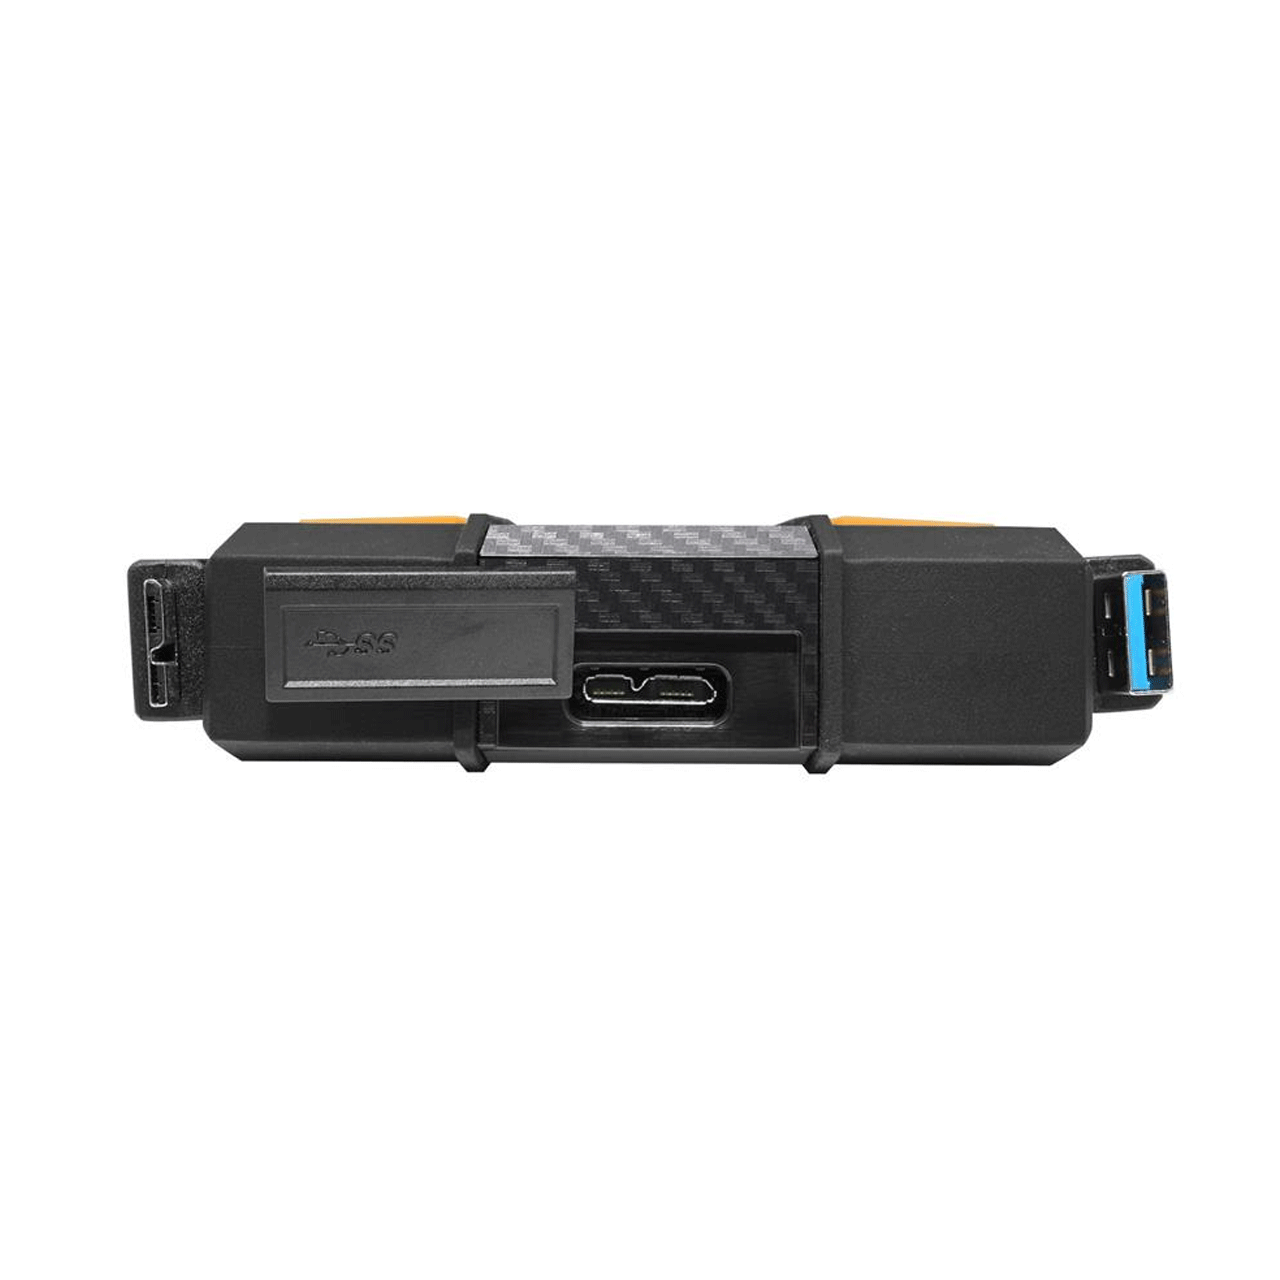 HD710-Pro--1TB-External-Hard-Drive